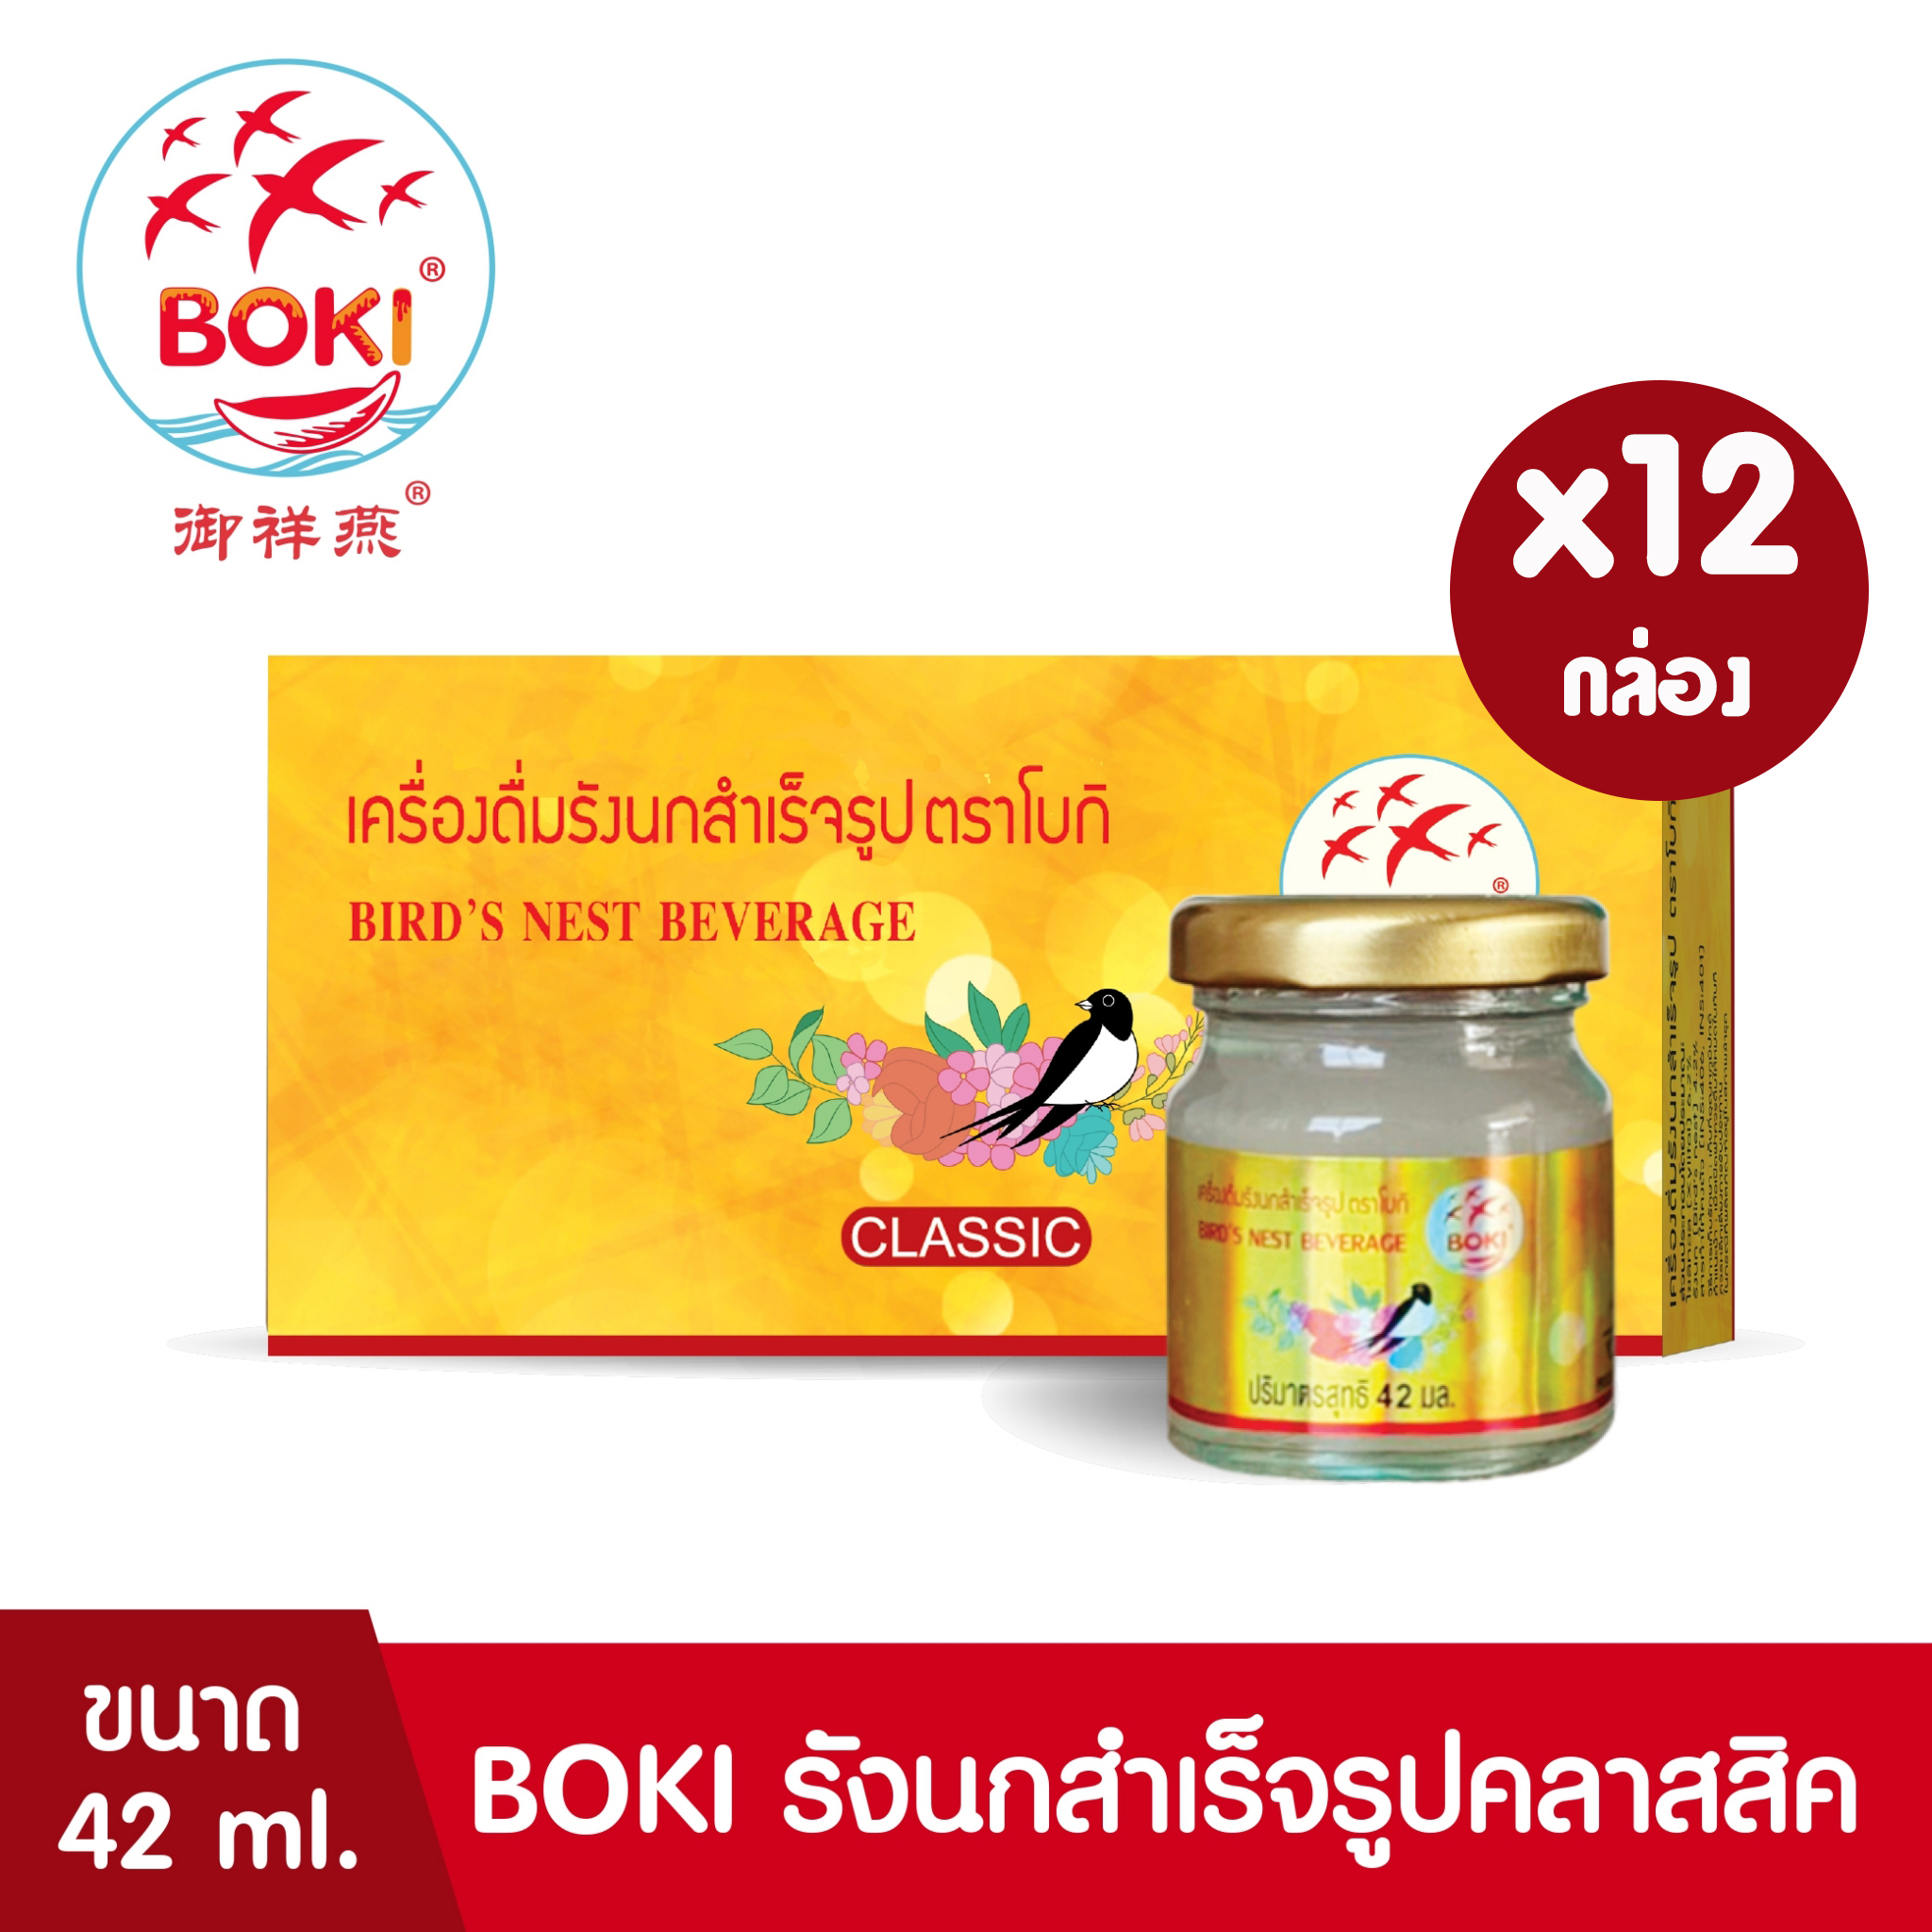 BOKI เครื่องดื่มรังนกสำเร็จรูป คลาสสิค (42ml x 3) 12 กล่อง รังนกเพื่อสุขภาพ Bird’s nest beverage Classic